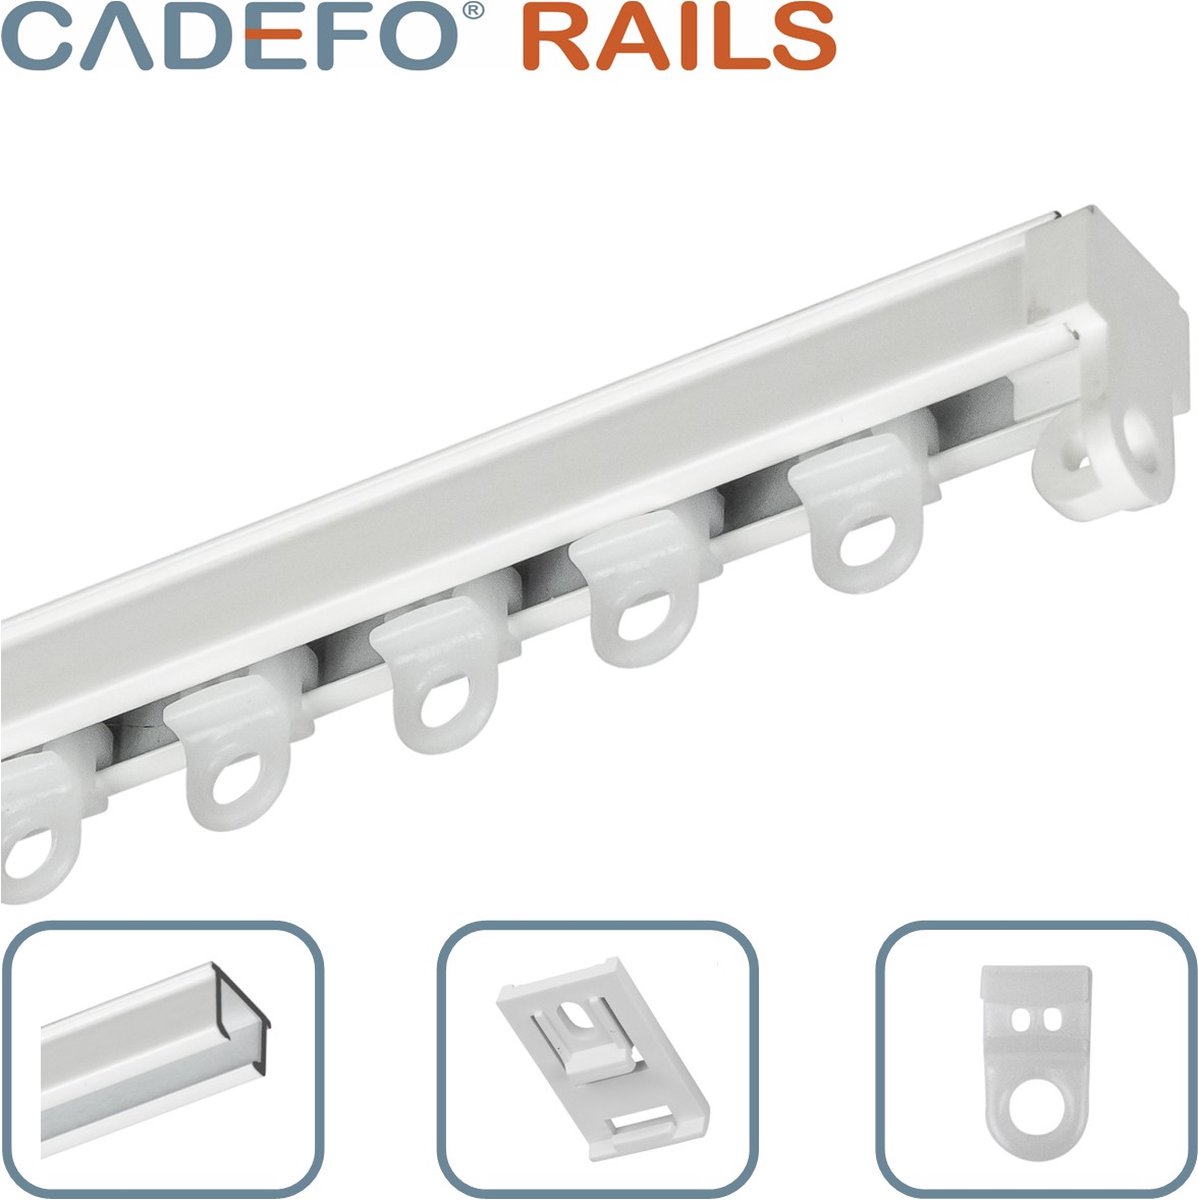 CADEFO RAILS (501 - 550 cm) Gordijnrails - Compleet op maat! - UIT 1 STUK - Leverbaar tot 6 meter - Plafondbevestiging - Lengte 534 cm